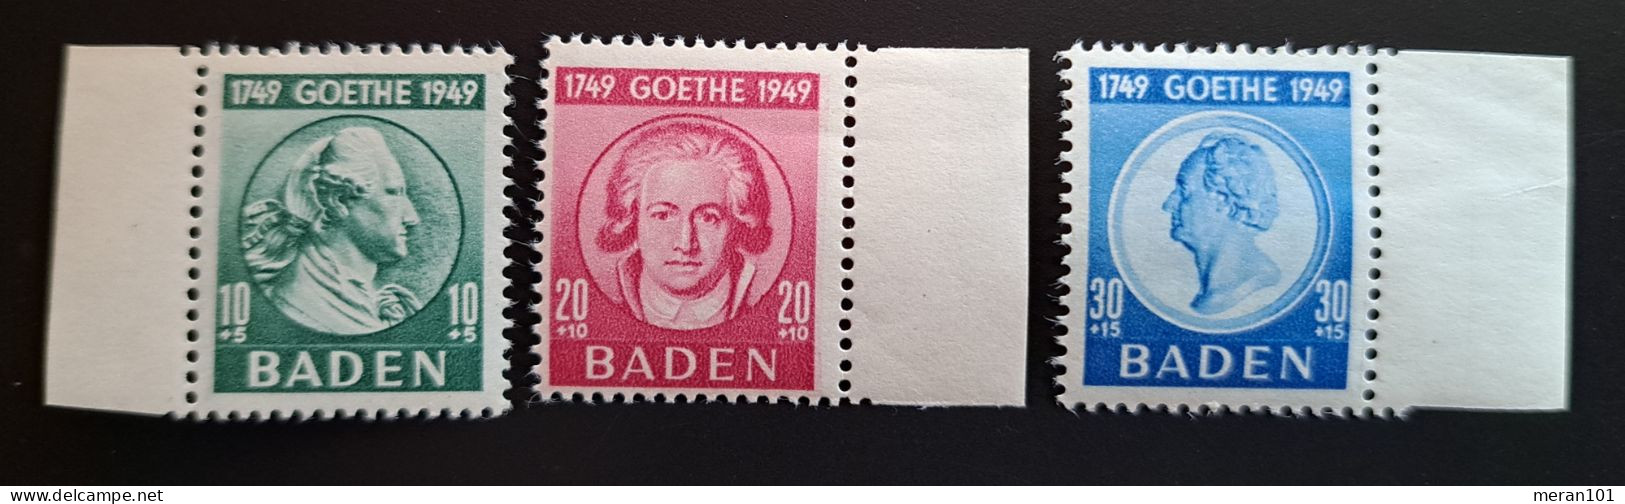 Baden Mi 47-49 MNH(postfrisch) Goethe - Bade